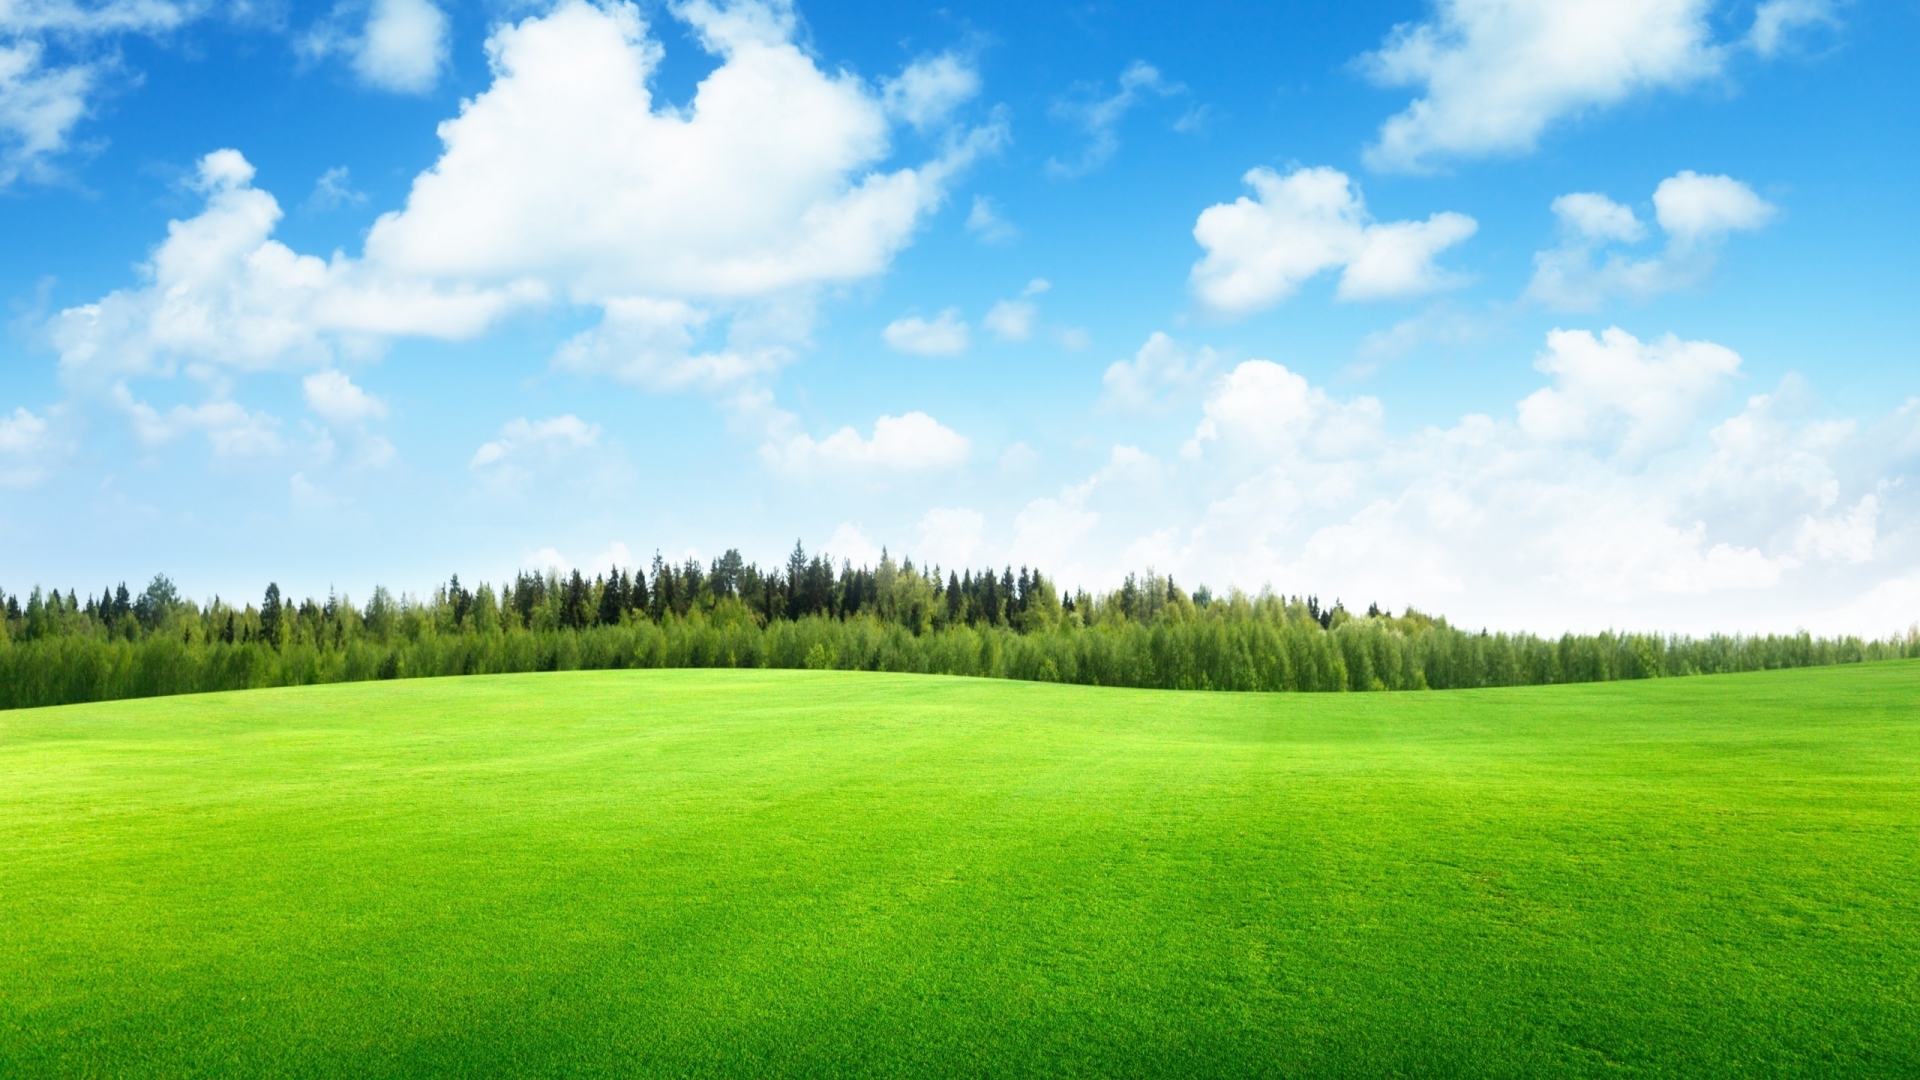 Beaufitul Green Grass Field for 1920 x 1080 HDTV 1080p resolution